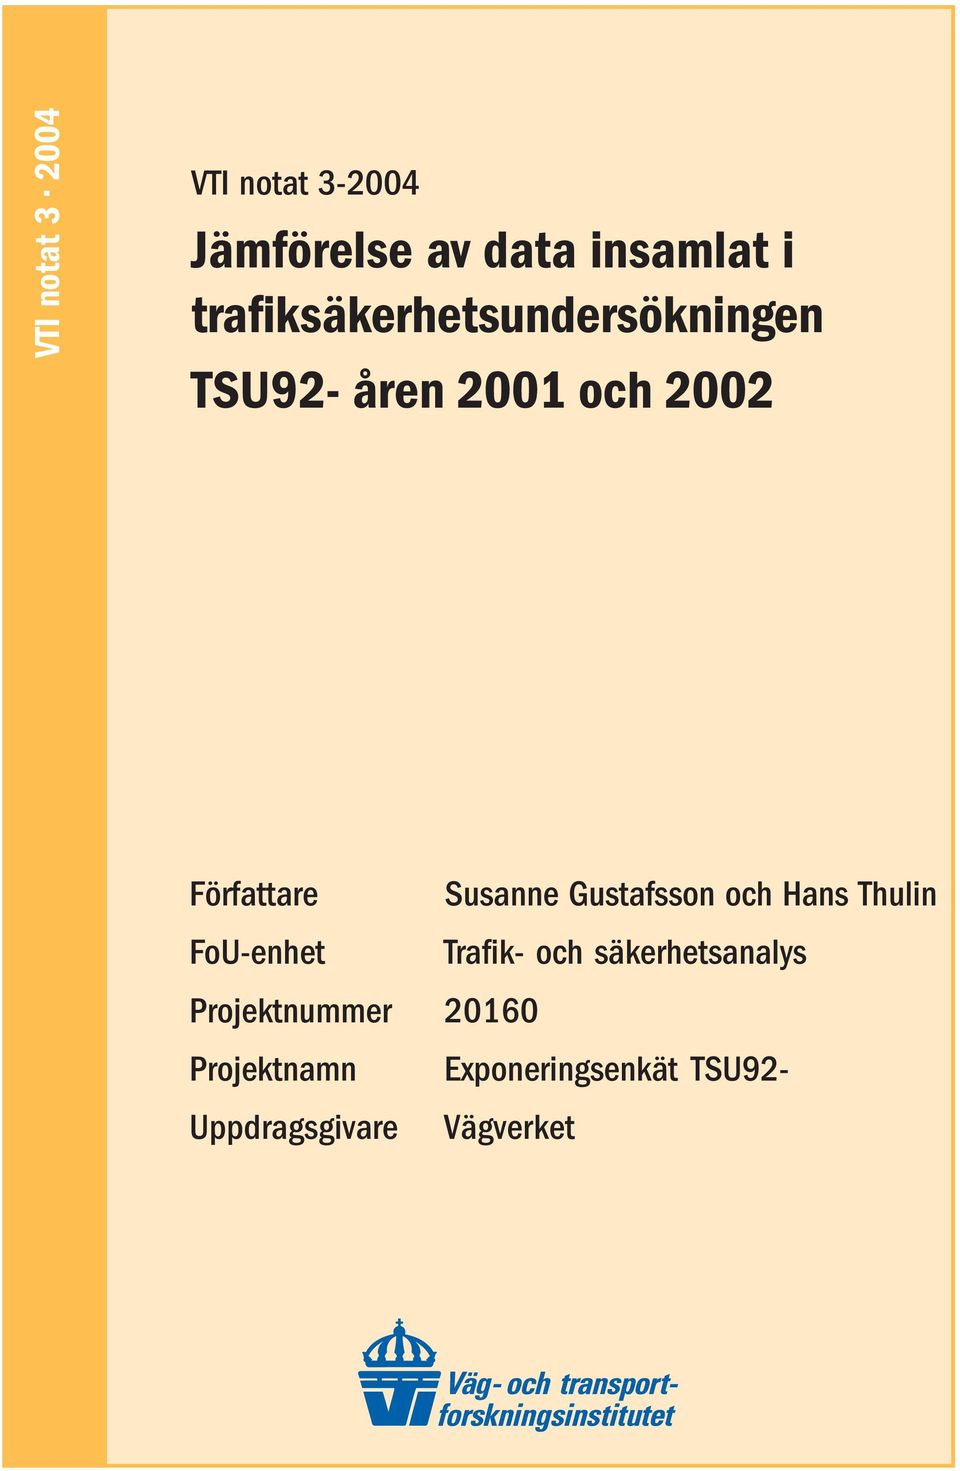 Susanne Gustafsson och Hans Thulin FoU-enhet Trafik- och